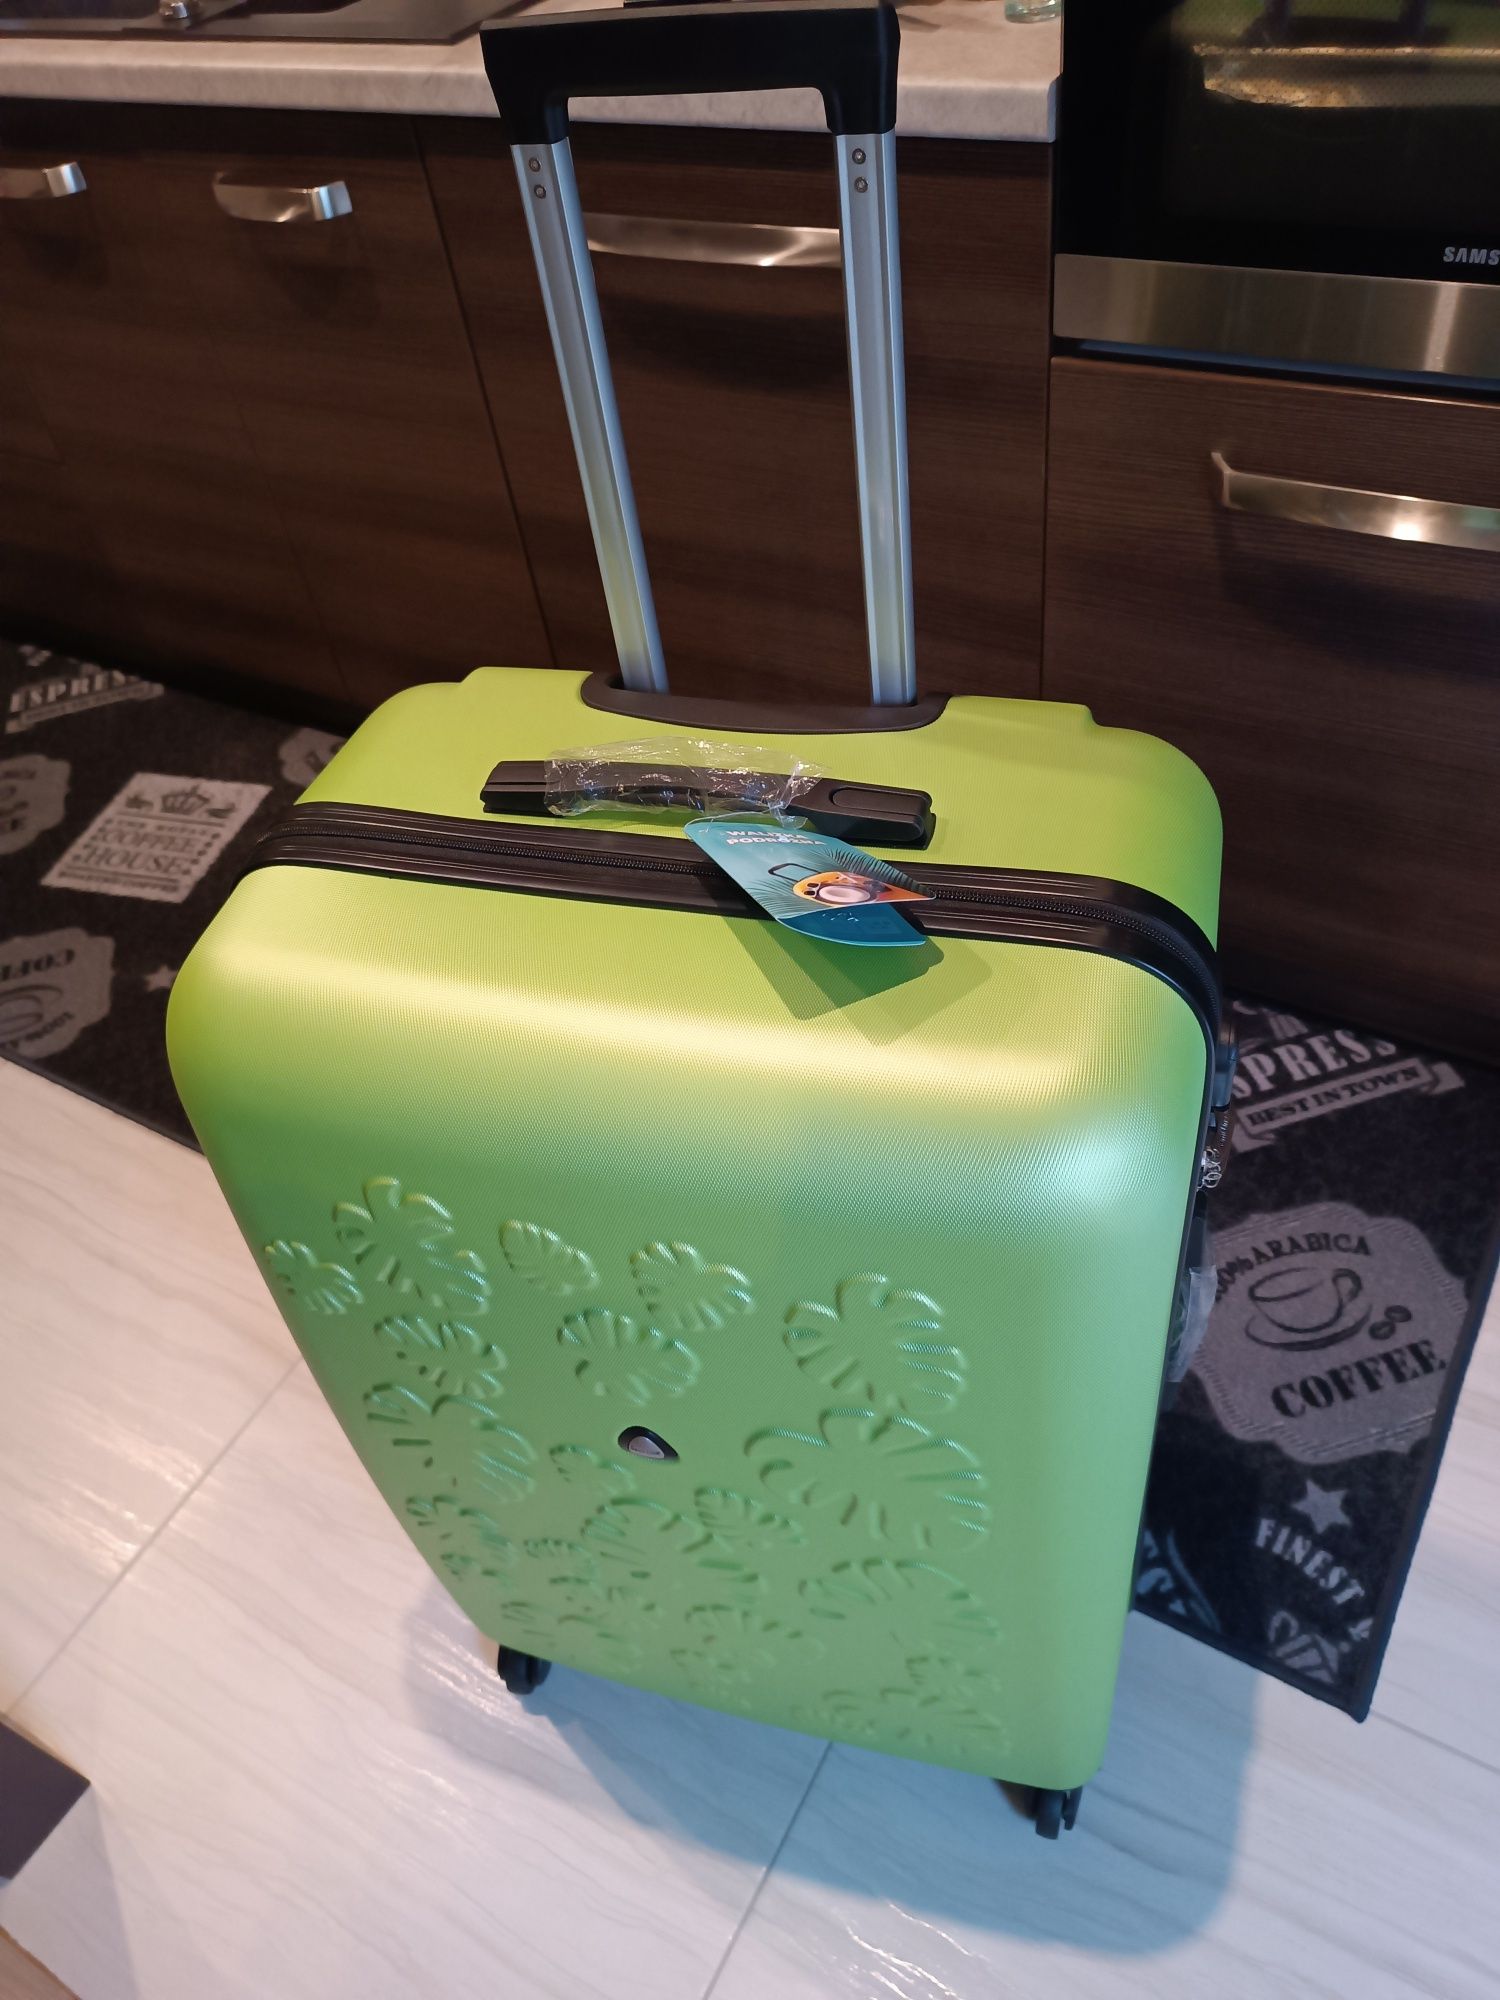 Duża twarda walizka podróżna Semi Line NOWA zielona limonkowa piękna  Białystok Jaroszówka • OLX.pl